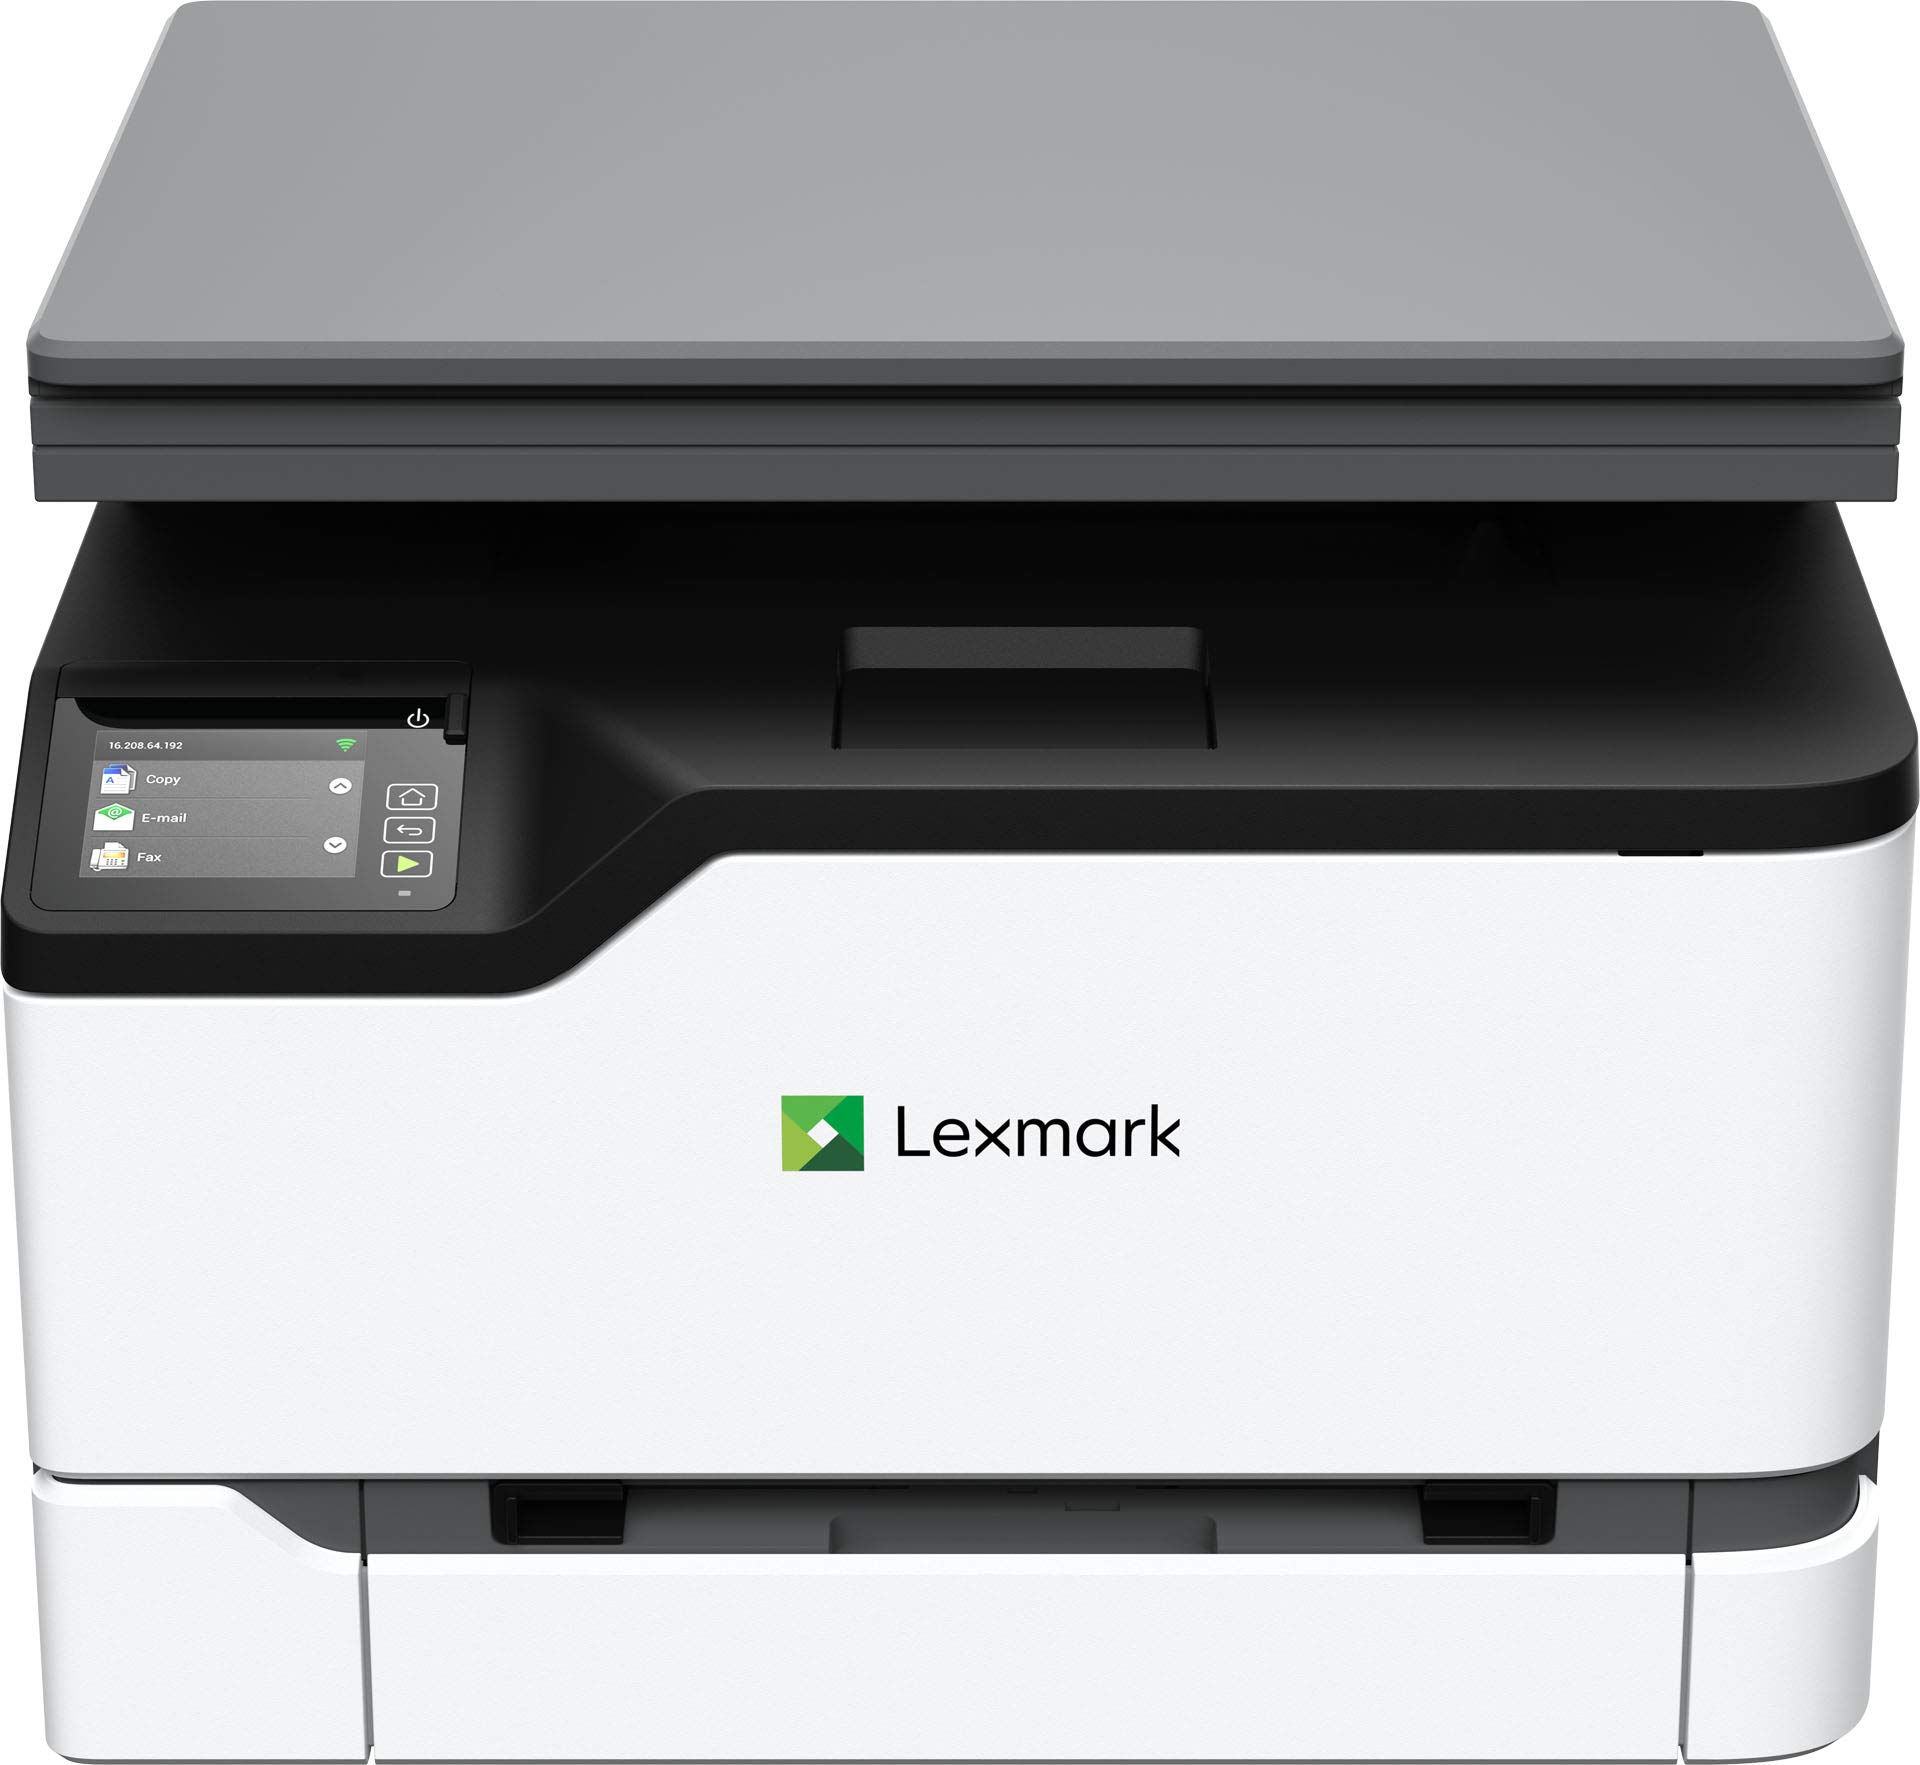 Lexmark MC3224dwe 彩色多功能激光打印机，具有打印、复印、扫描和无线功能，具有全谱安全性的双面打印，打印速度高达 24 ppm (40N9040)，白色、灰色